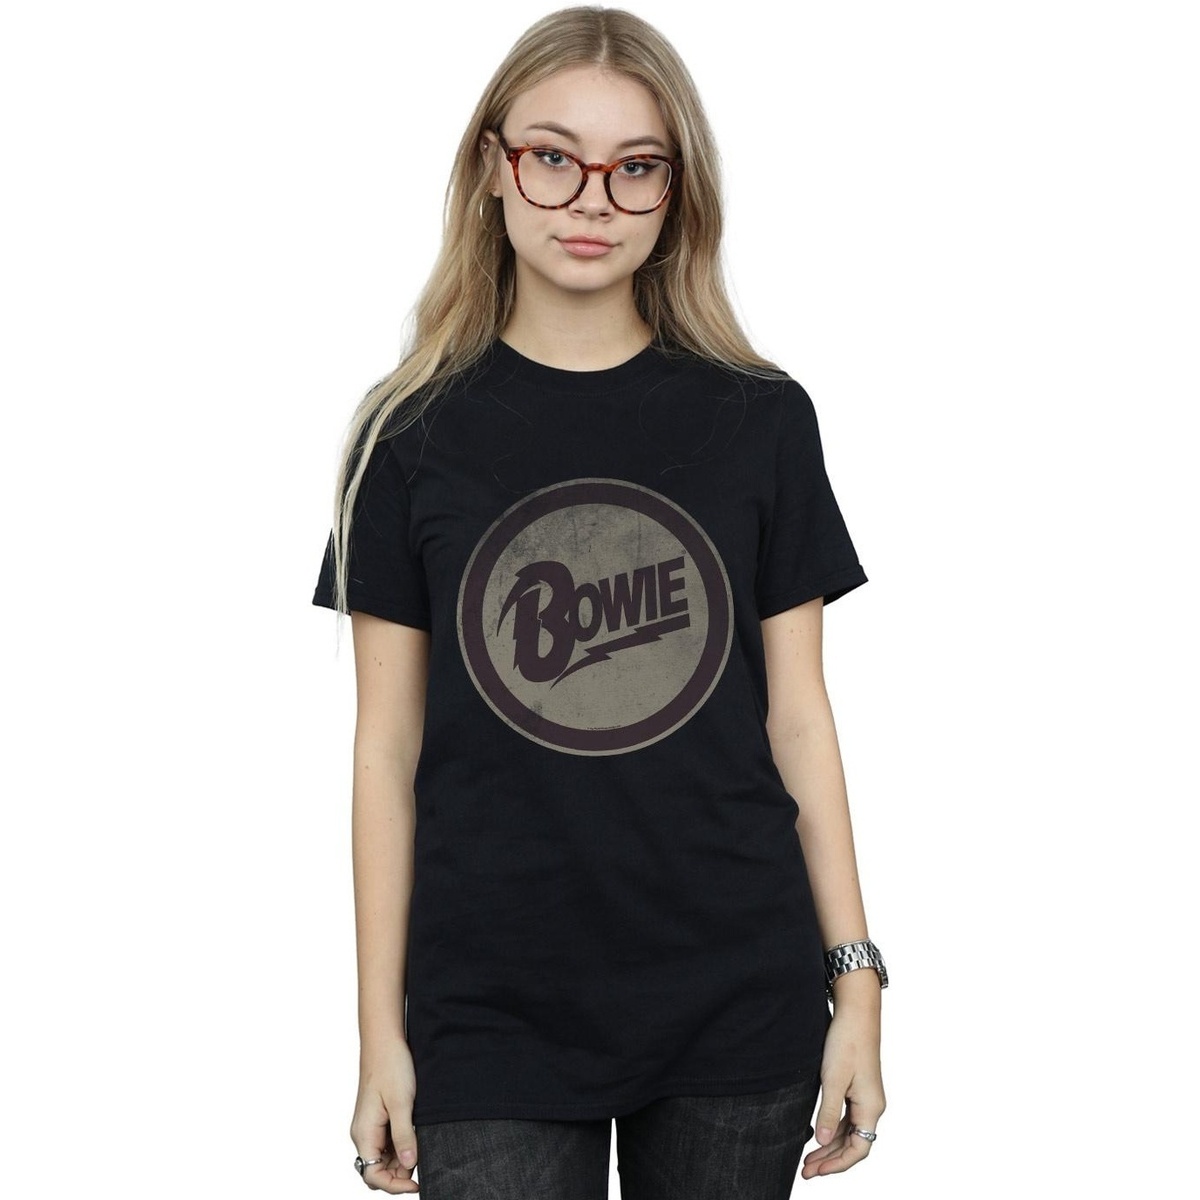 textil Mujer Camisetas manga larga David Bowie Circle Logo Negro